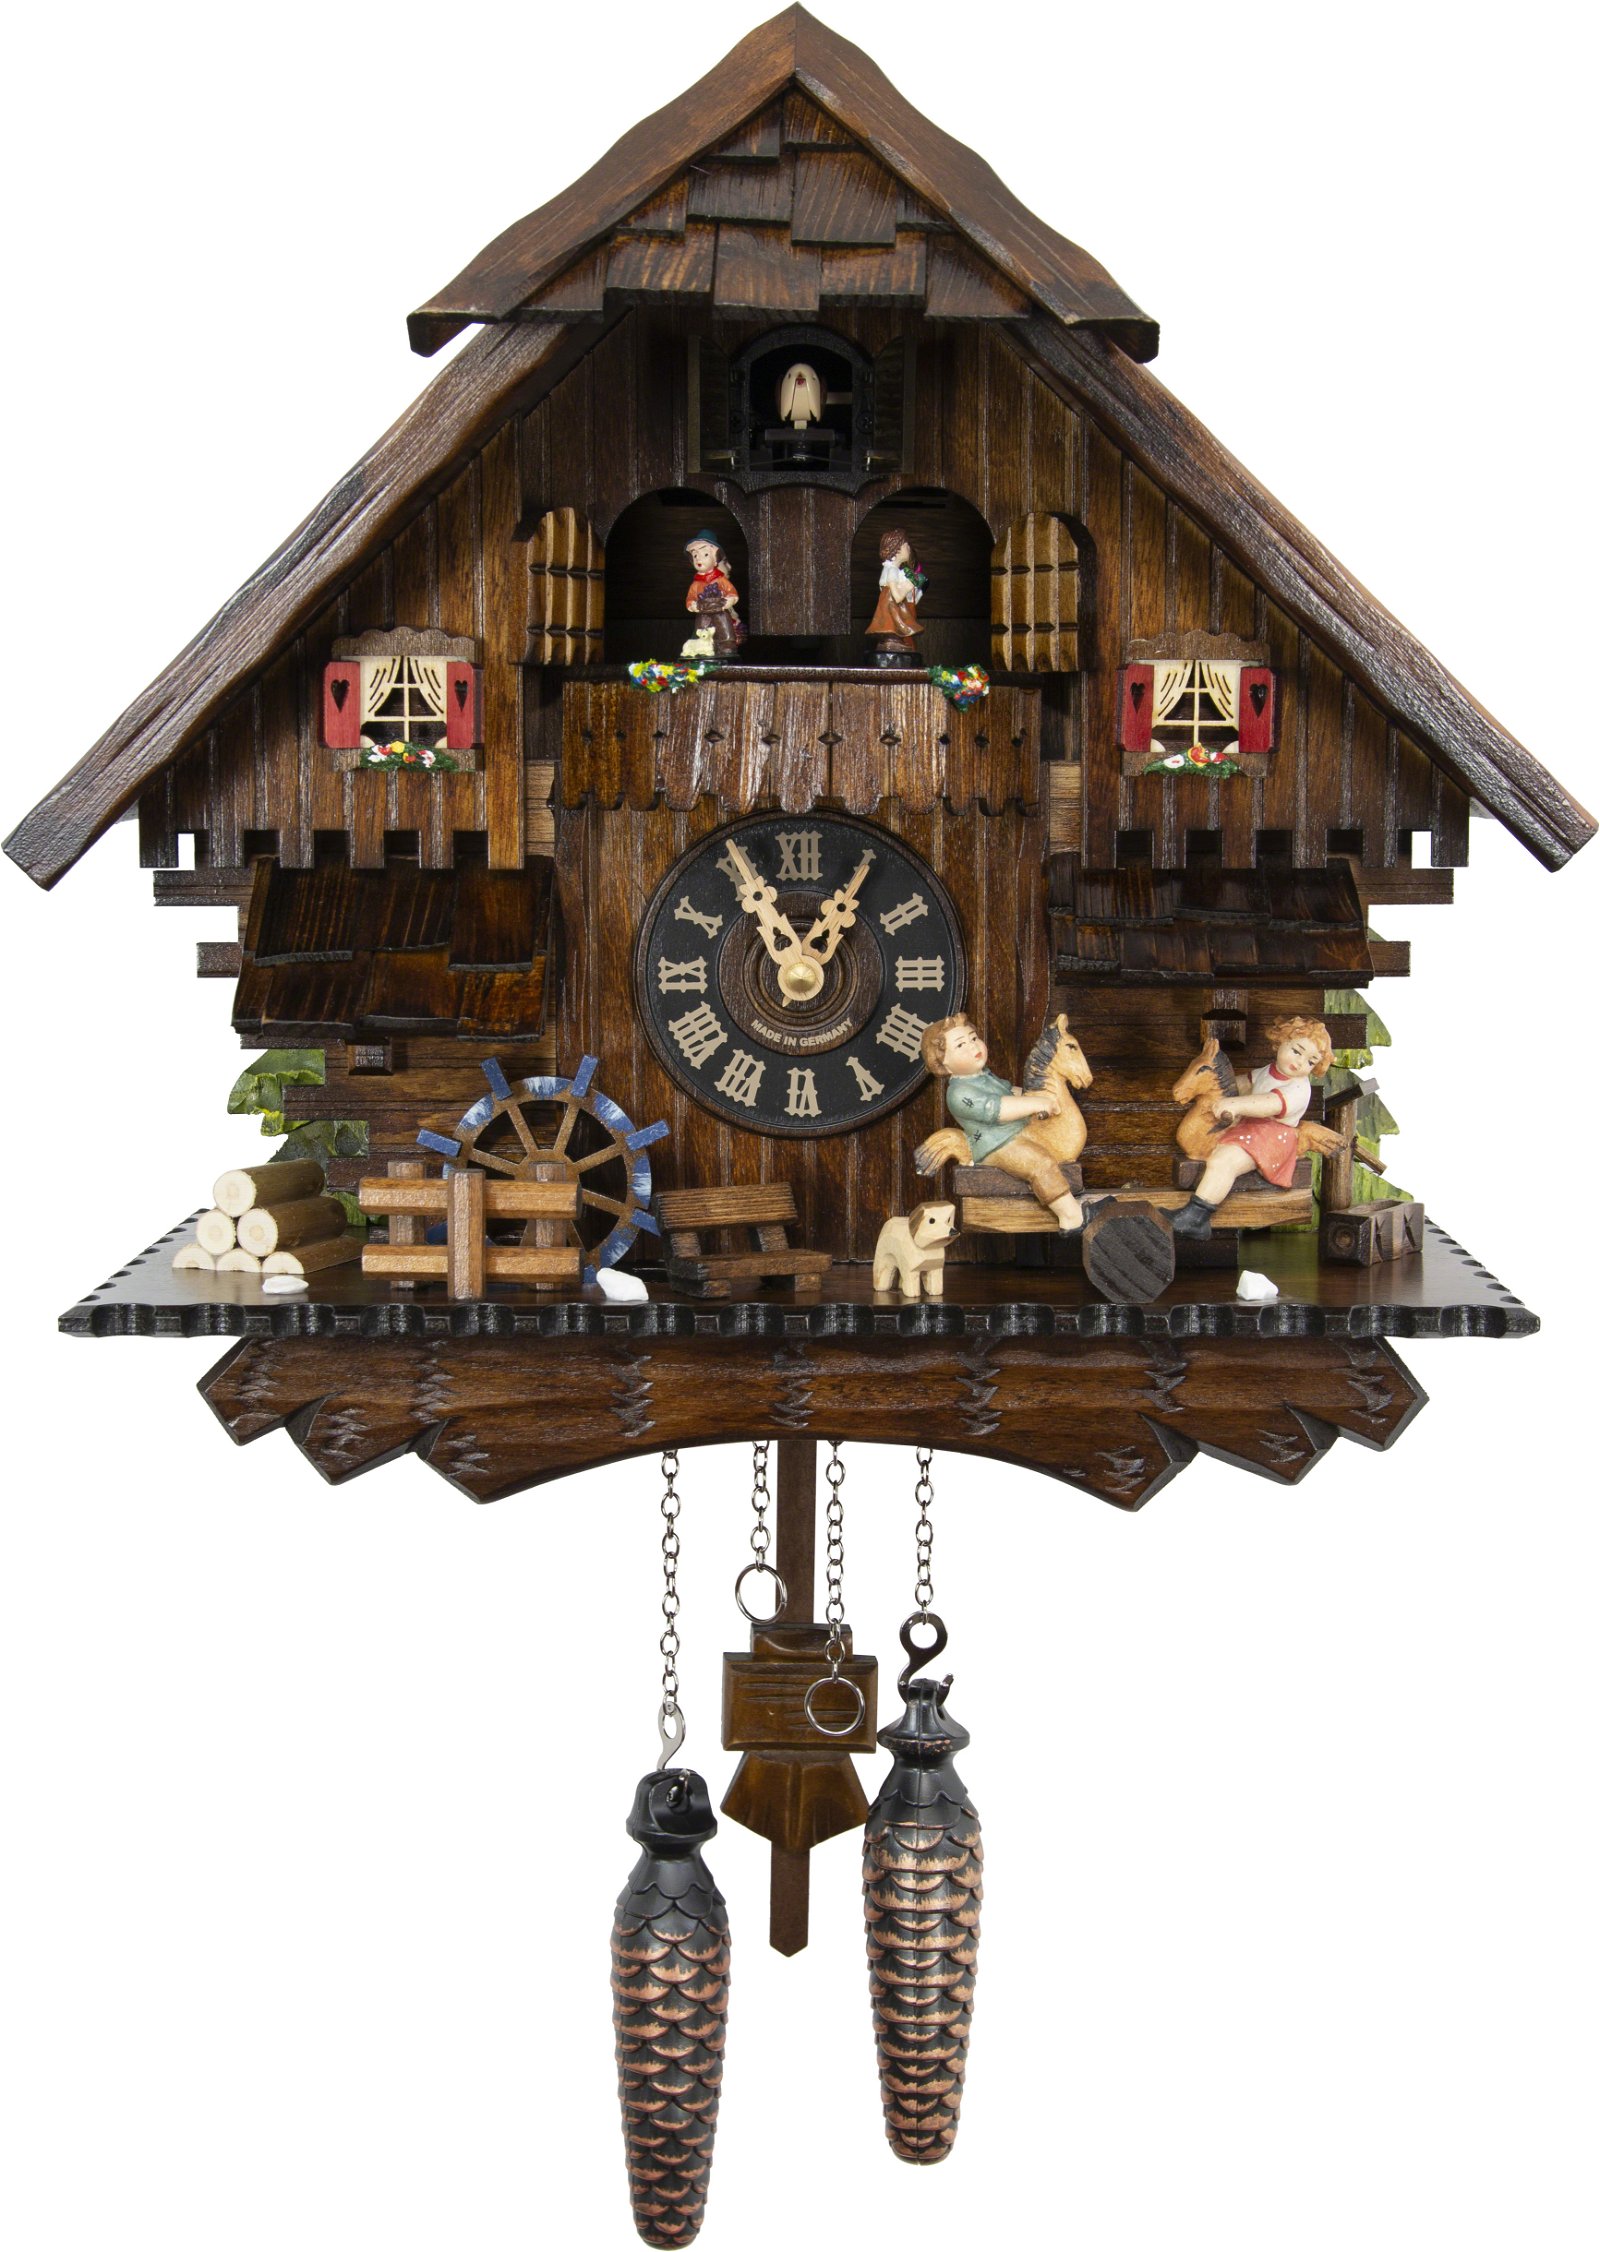 Kuckucksuhr Chalet-Stil Quarz-Uhrwerk 36cm von Engstler